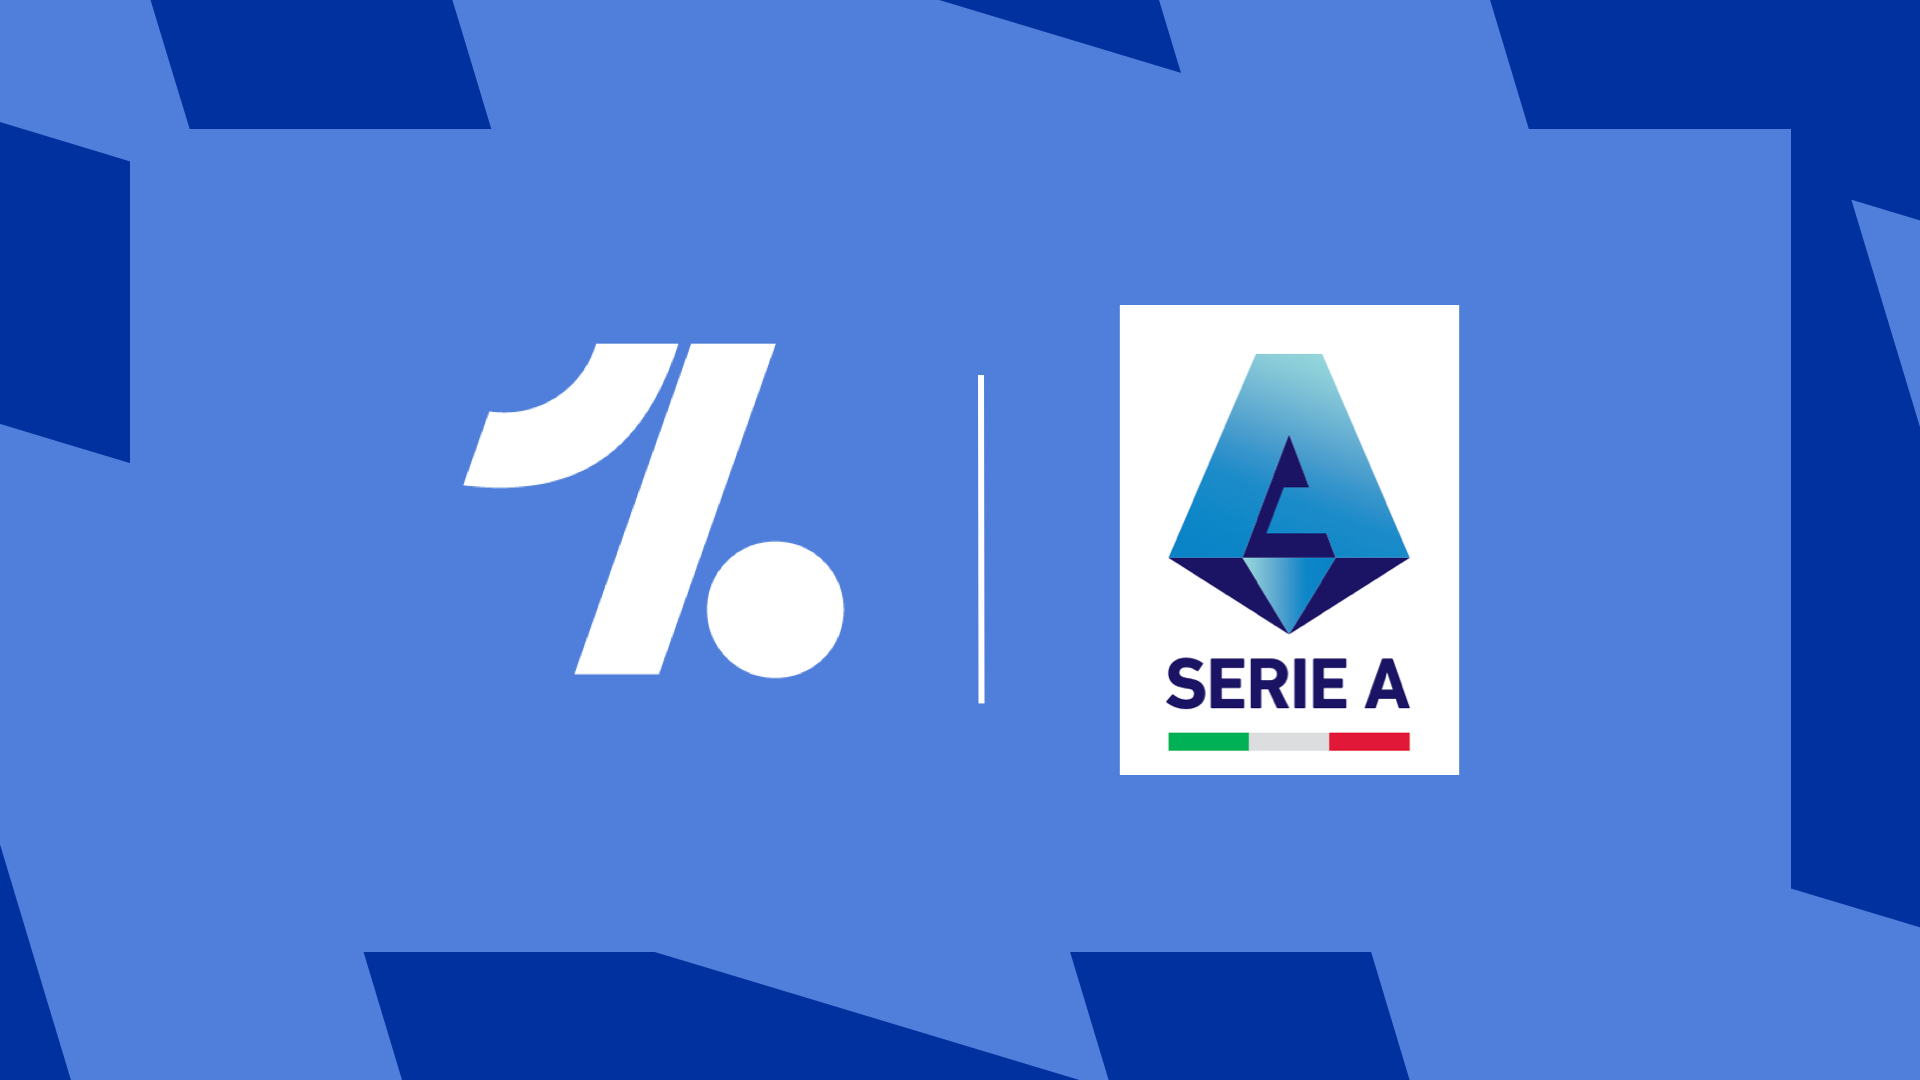 Serie A 2022-23 full fixture list - Football Italia